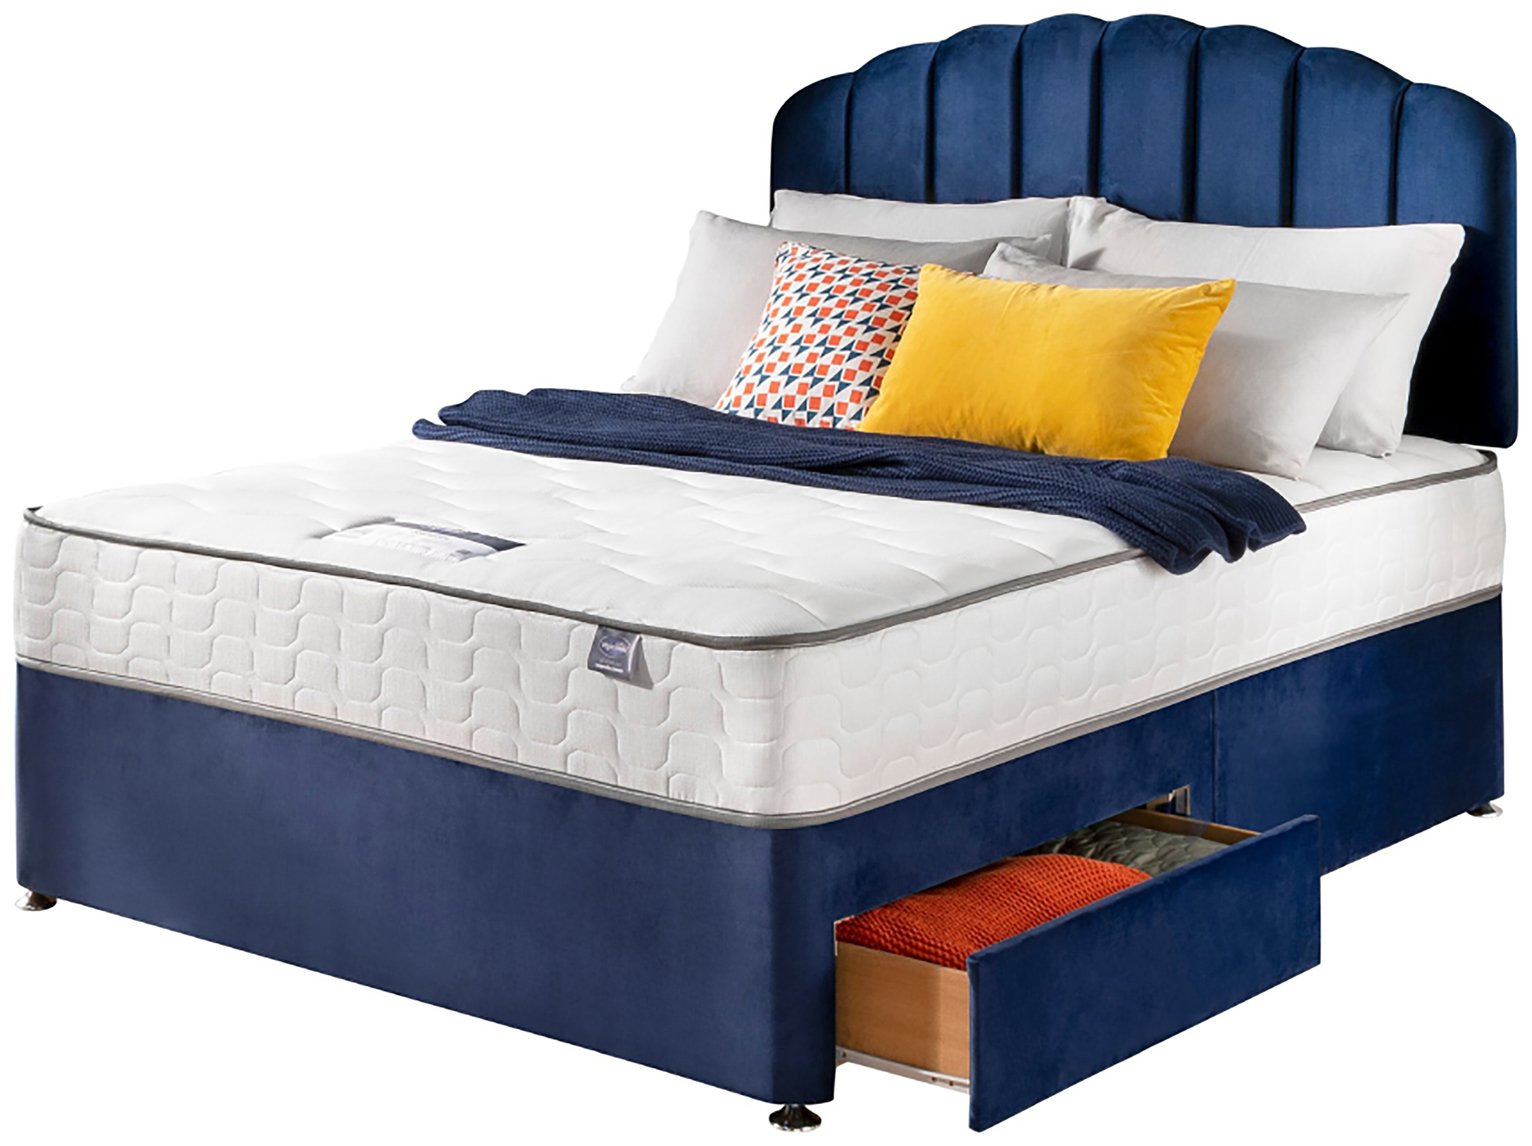 Silentnight Comfort Kingsize 2 Drawer Divan Bed - Blue